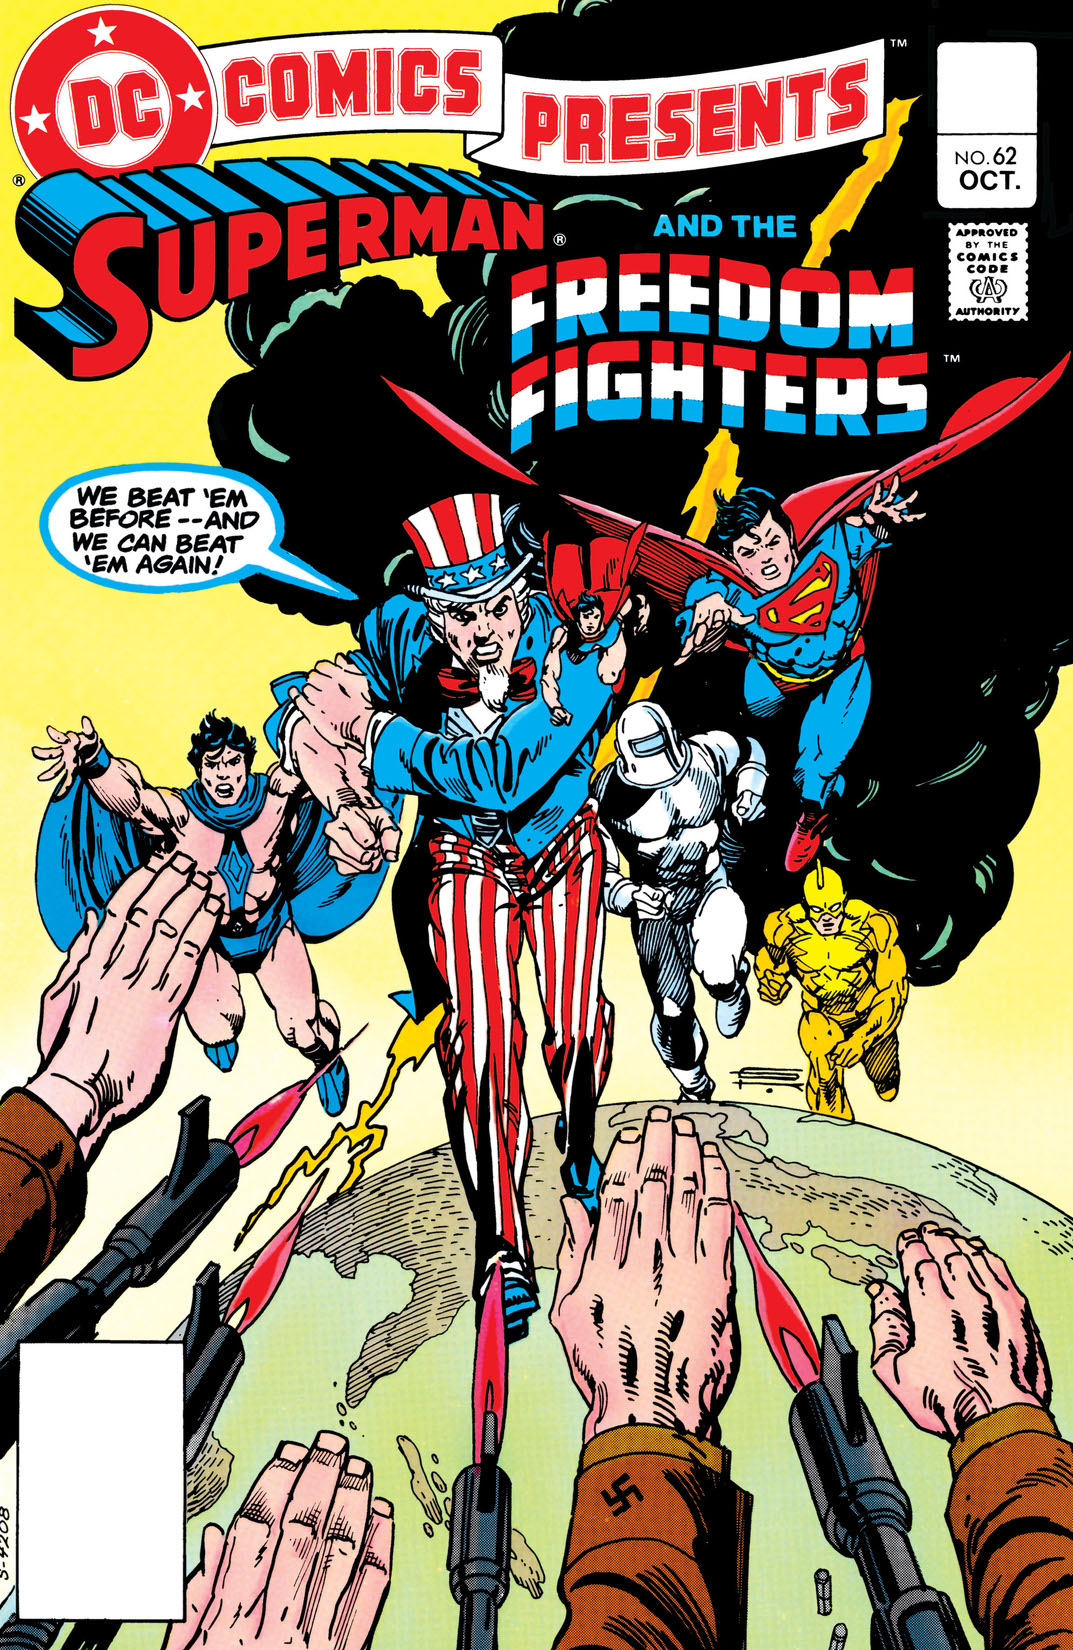 DC Comics Presents (1978-1986) #62 preview images